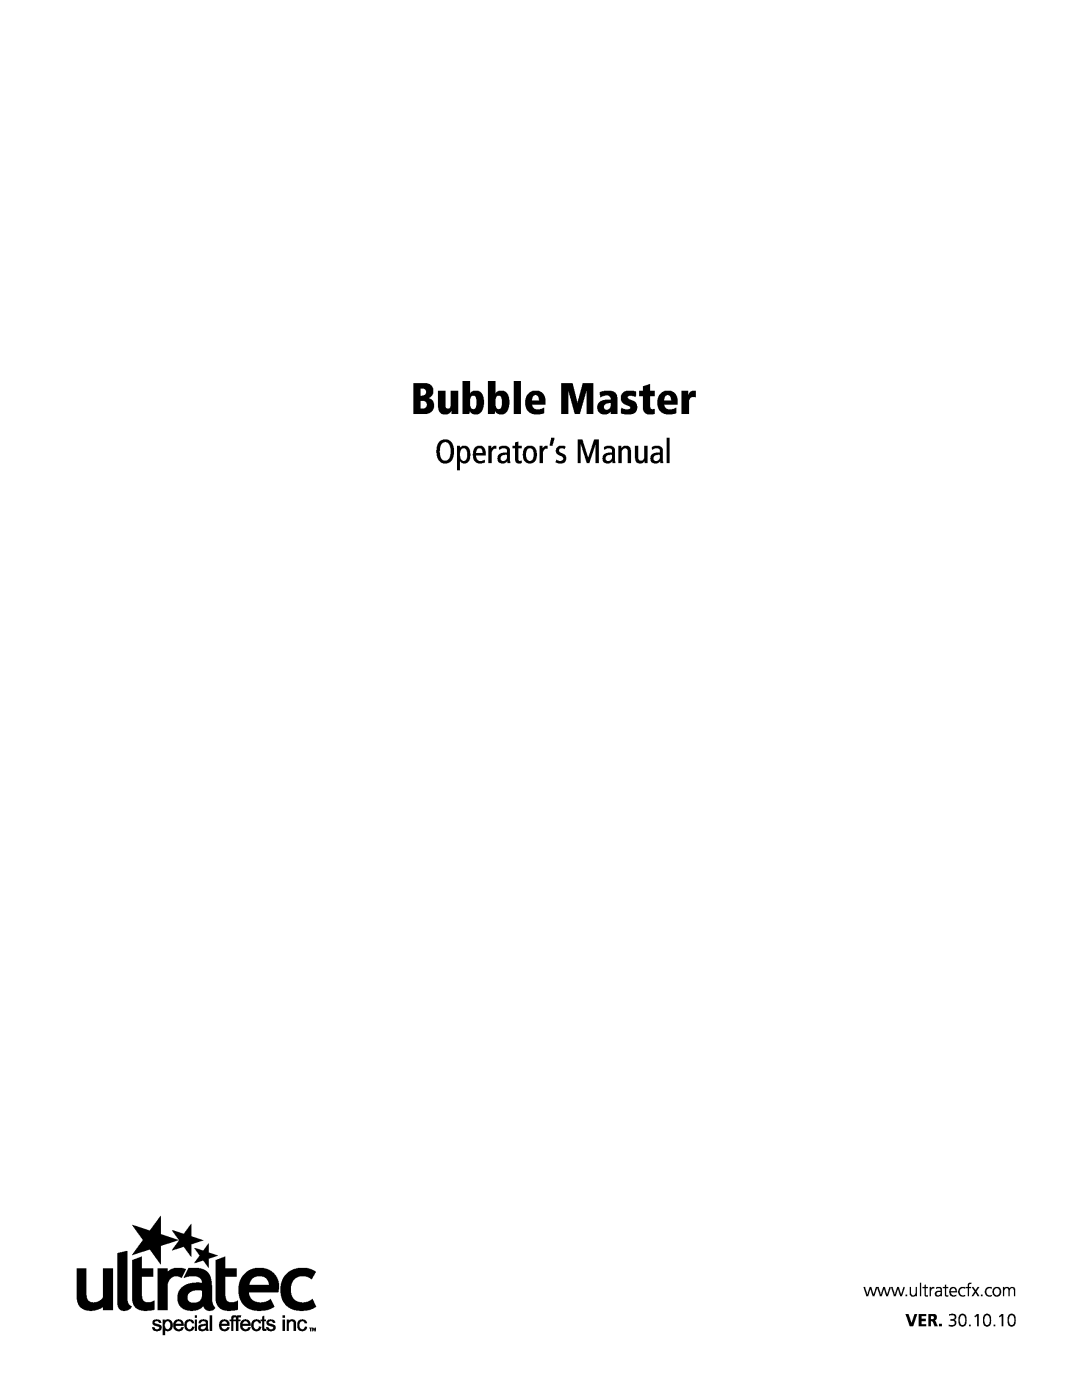 Ultratec CLB 2015, CLB 2014, CLB 2012 manual Bubble Master, Operator’s Manual 